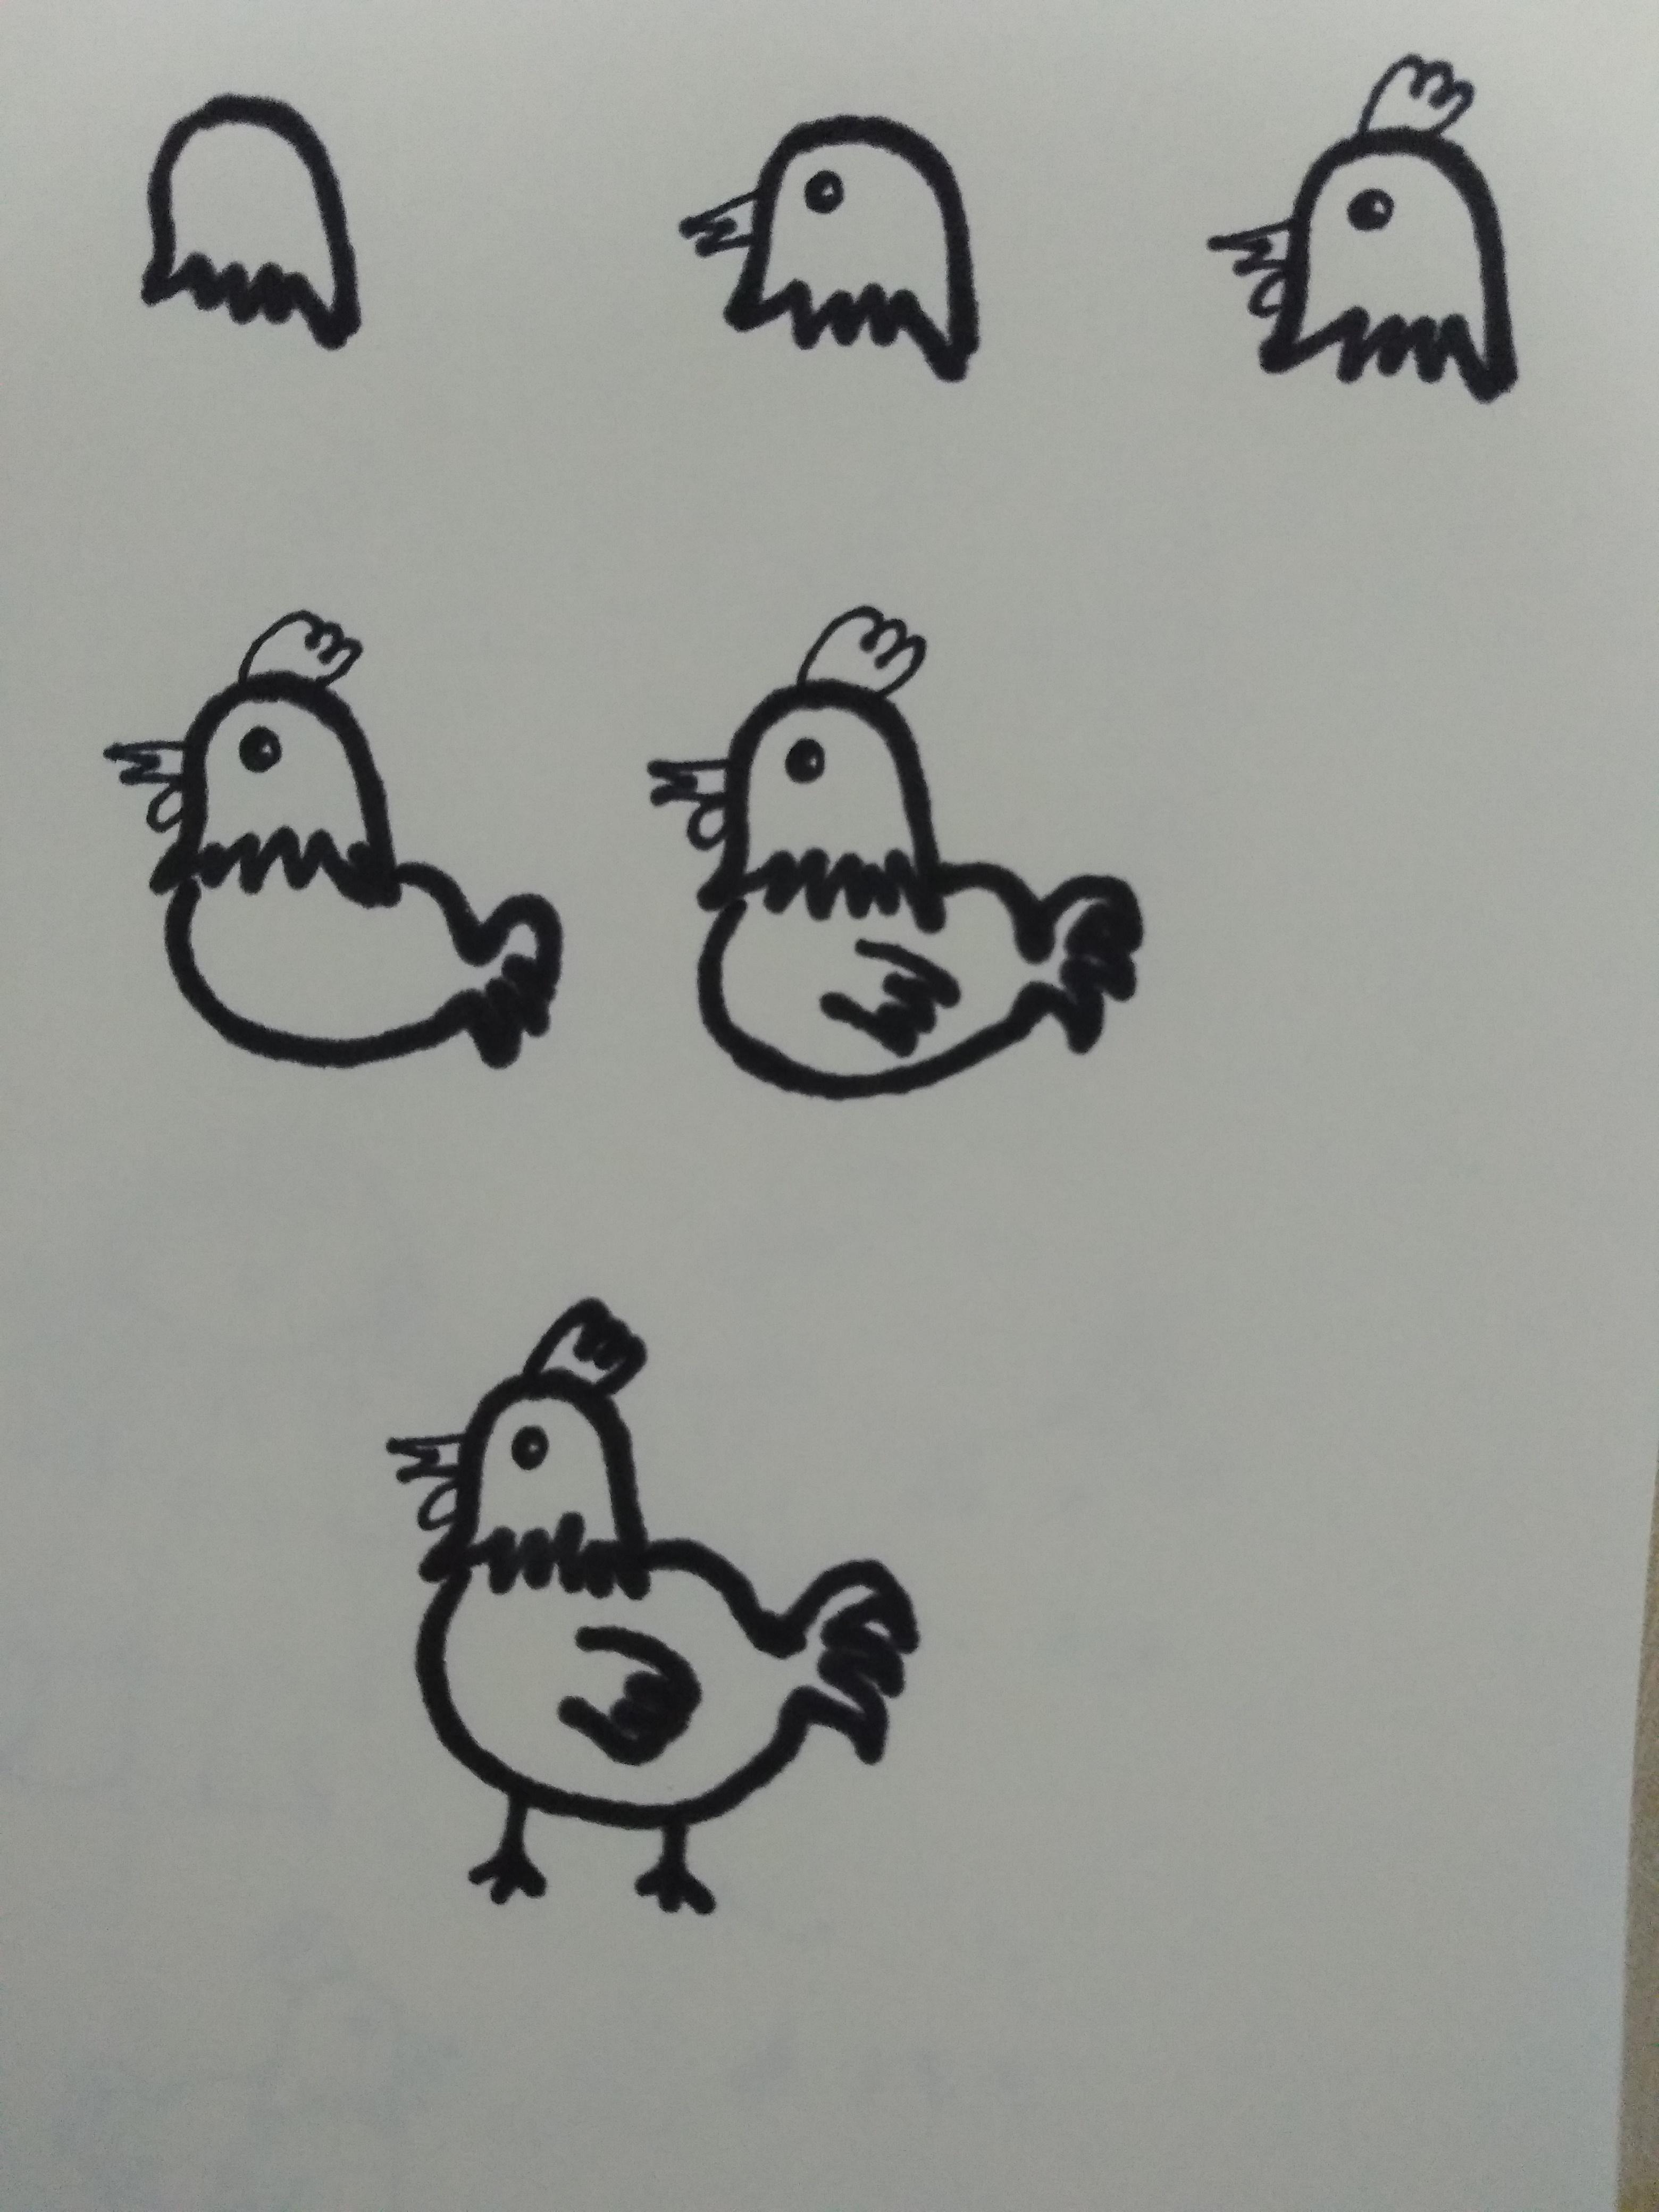 鸡,部首:鸟笔画:7组词:公鸡,母鸡,鸡蛋,柴鸡,鸡笼,鸡冠鸡,家禽,品种